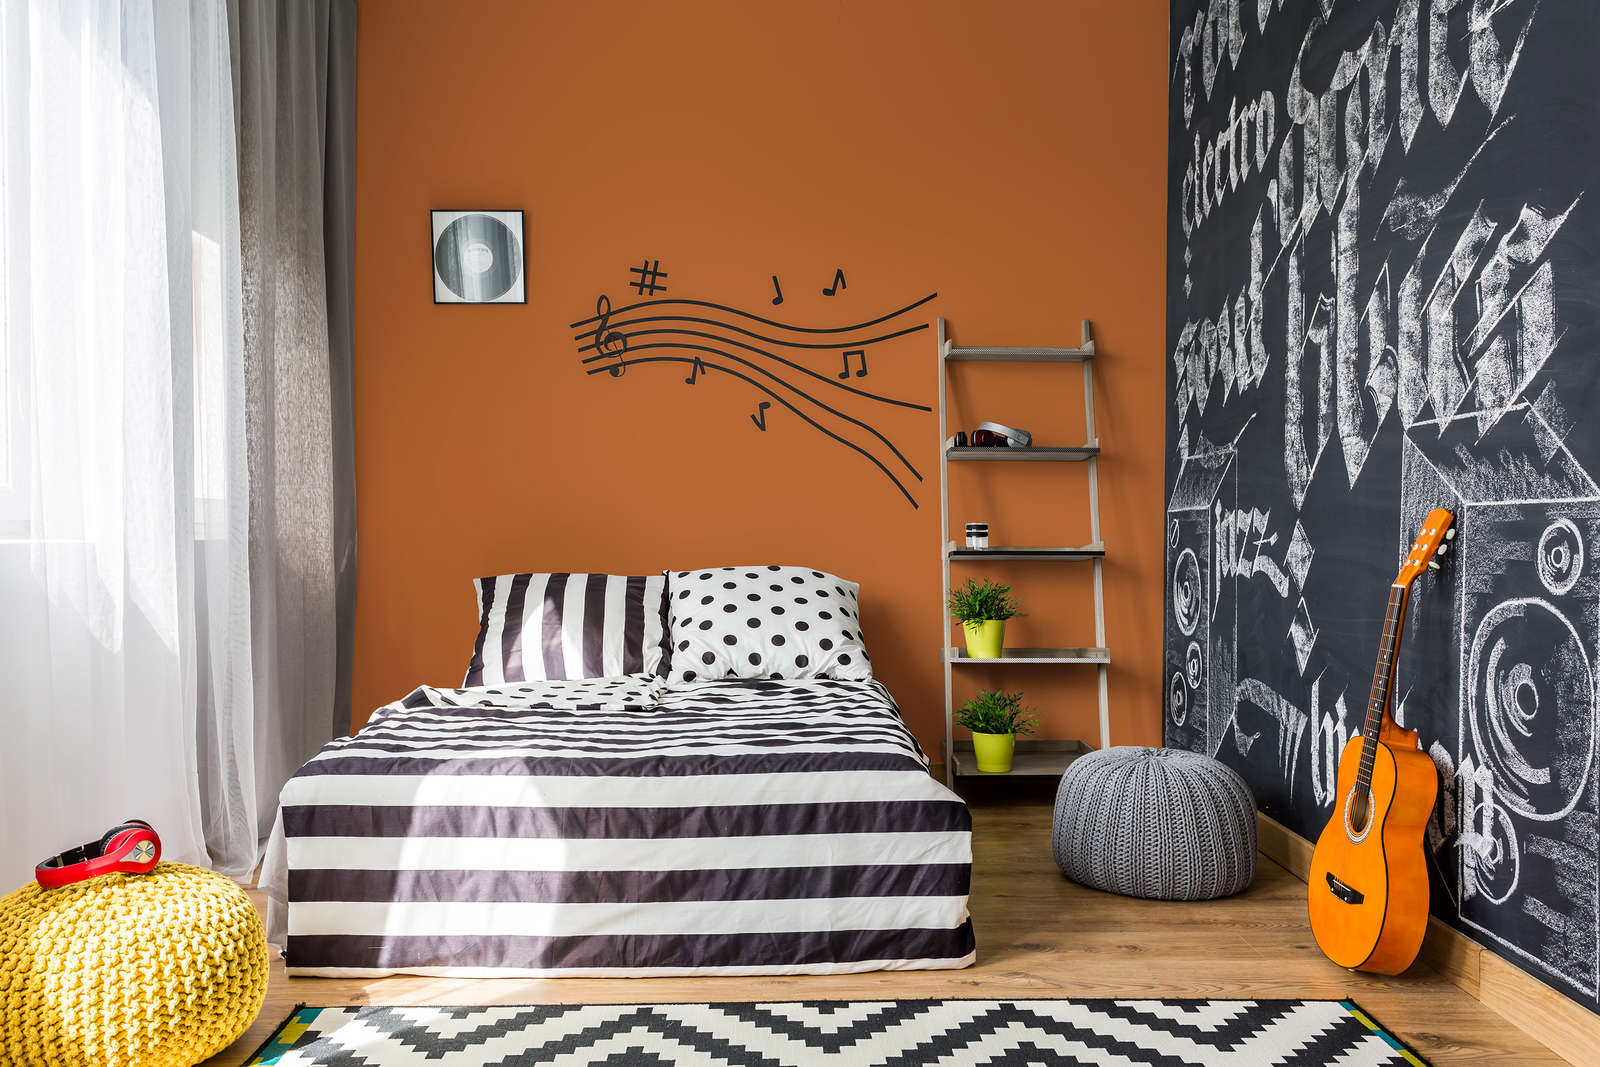             Pittura murale Premium Arancione caldo »Pretty Peach« NW903 – 5 litri
        